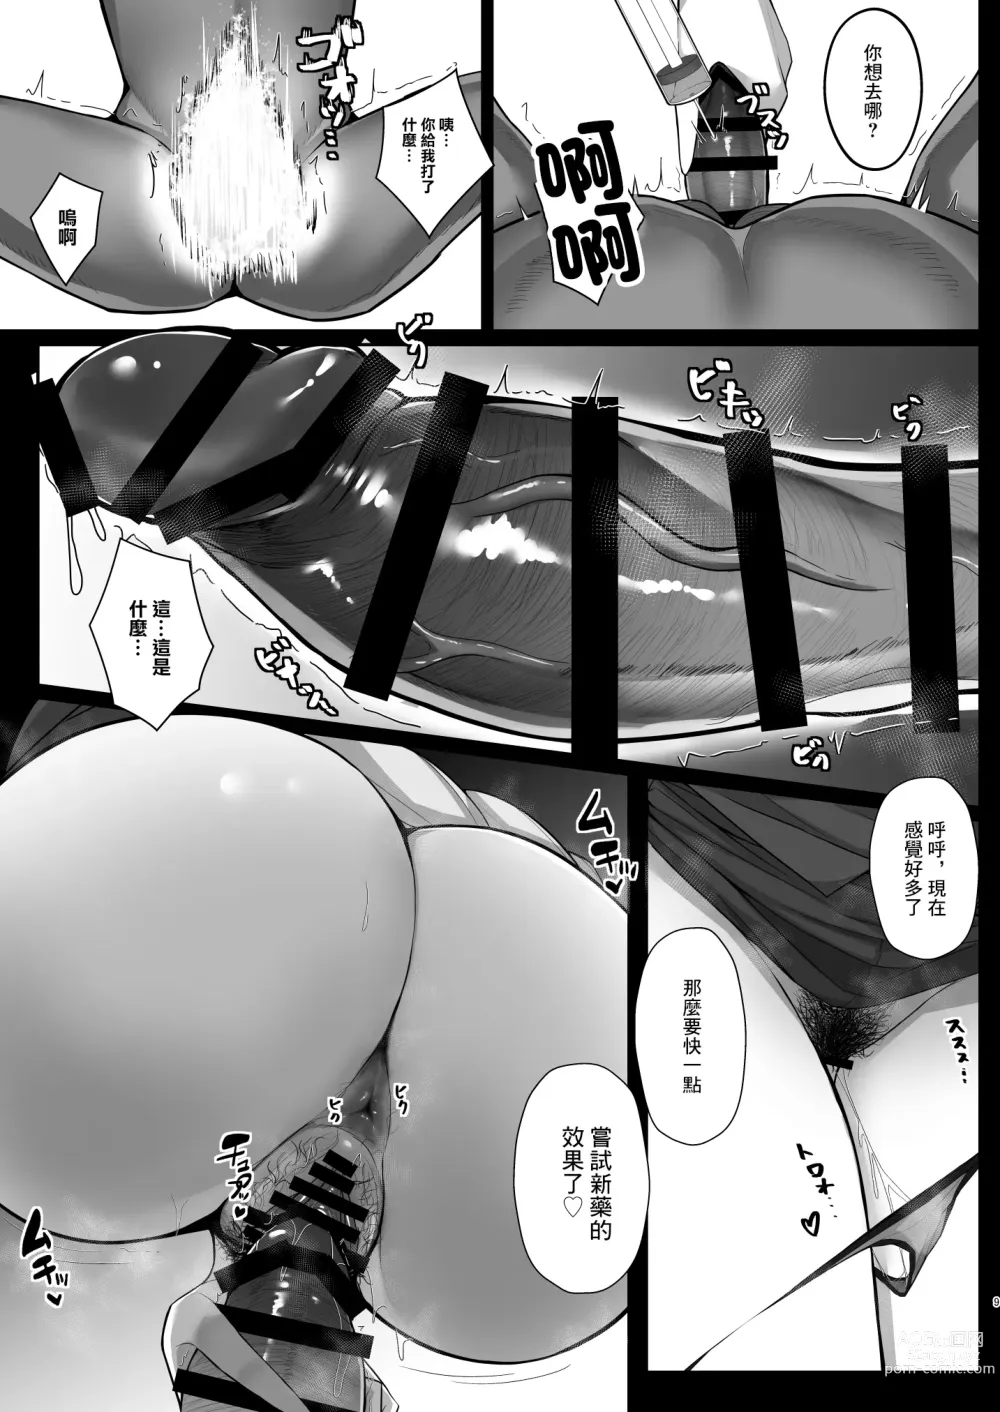 Page 7 of doujinshi Muramura wa Kanja de. 4